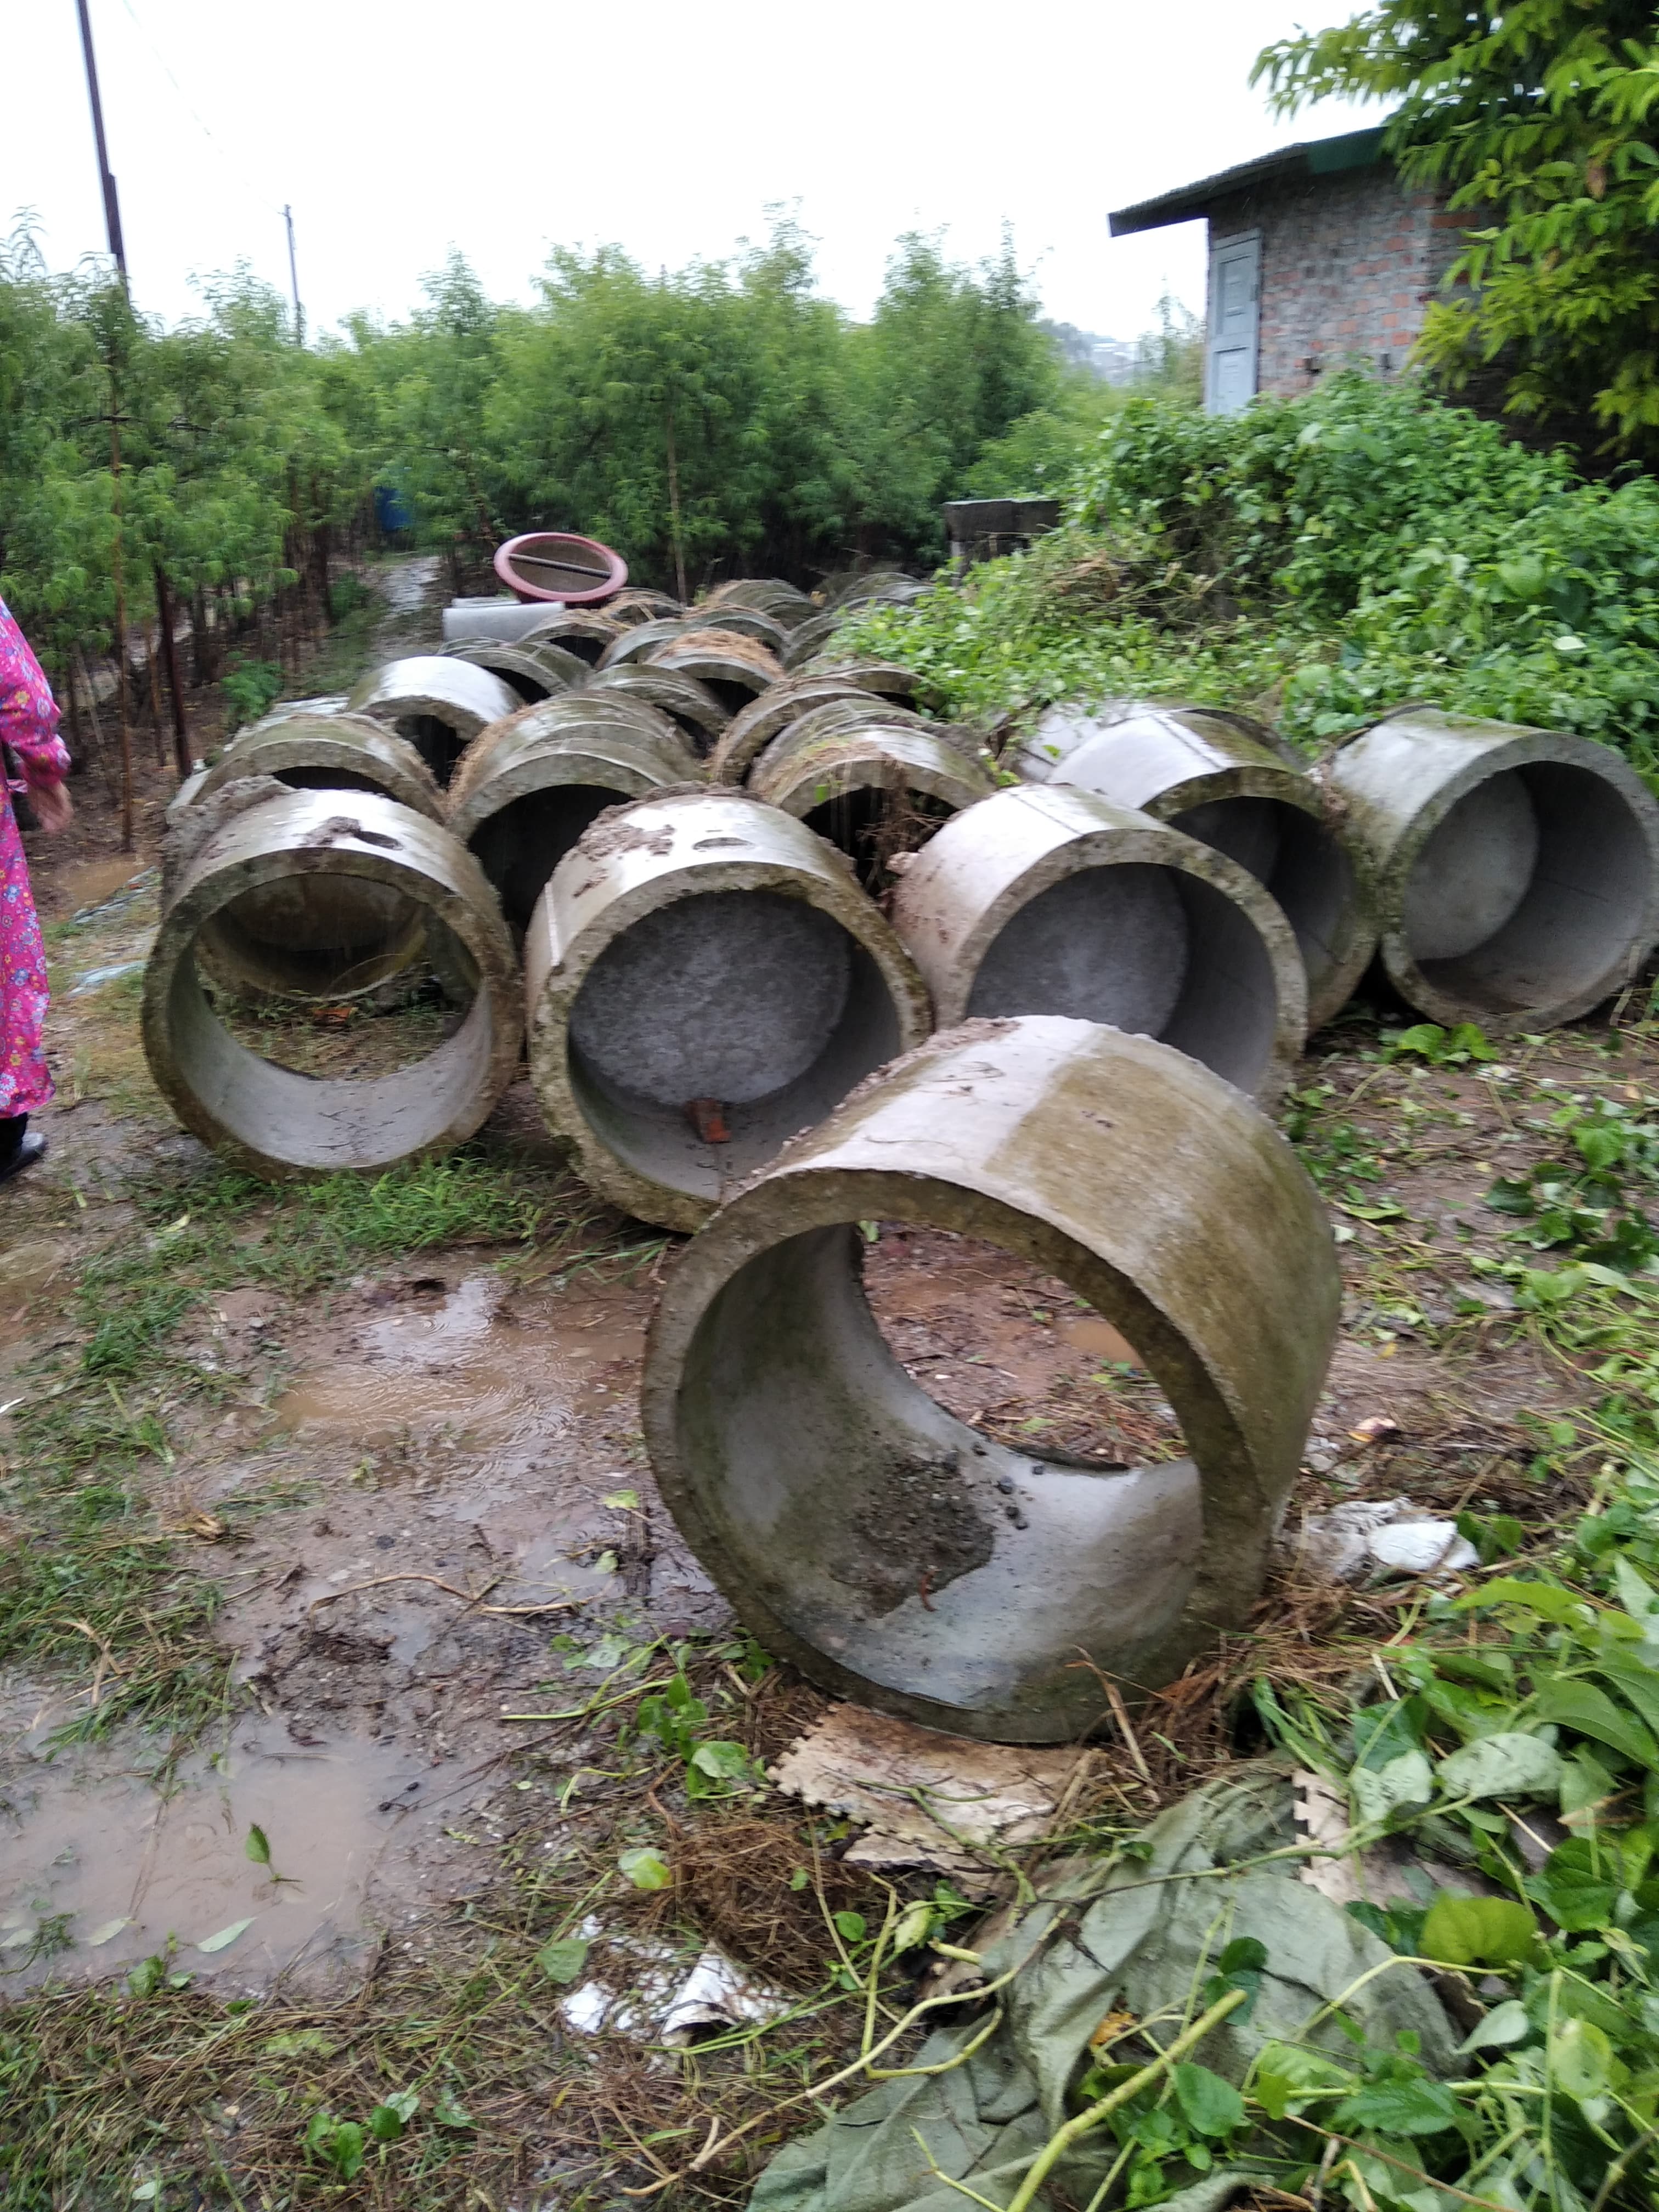 Bán và lắp đặt ống bi bê tông tại Phan Đình Phùng (quận Hoàn Kiếm)| dich vu ban ong cong be tong cot thep tai hoan kiem uy tin gia re